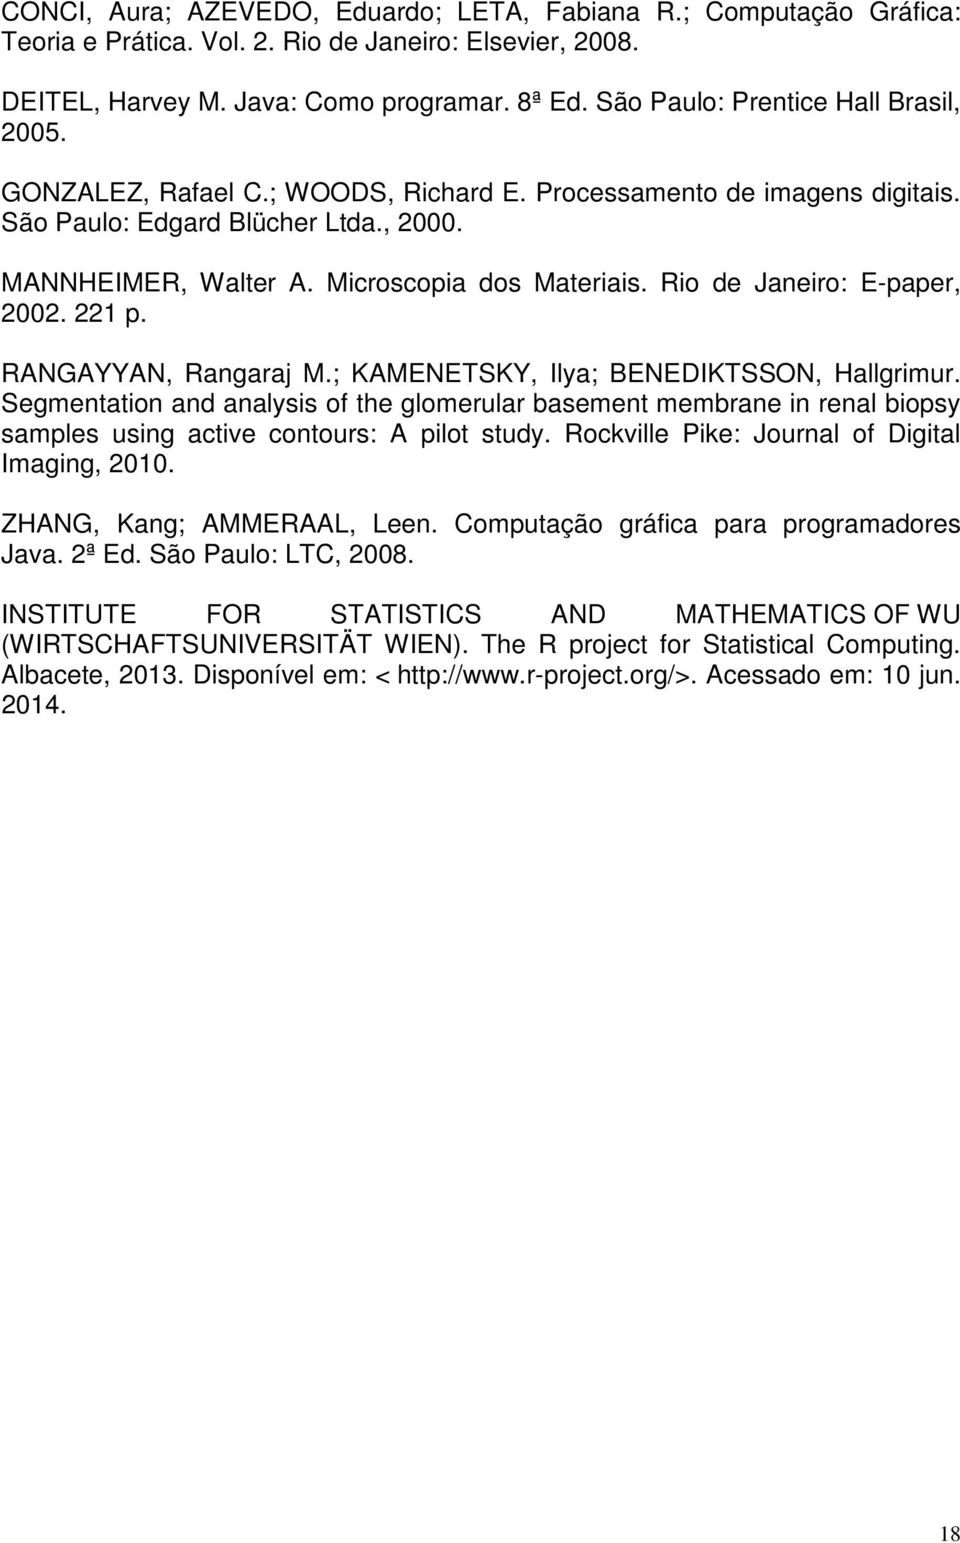 Rio de Janeiro: E-paper, 2002. 221 p. RANGAYYAN, Rangaraj M.; KAMENETSKY, Ilya; BENEDIKTSSON, Hallgrimur.